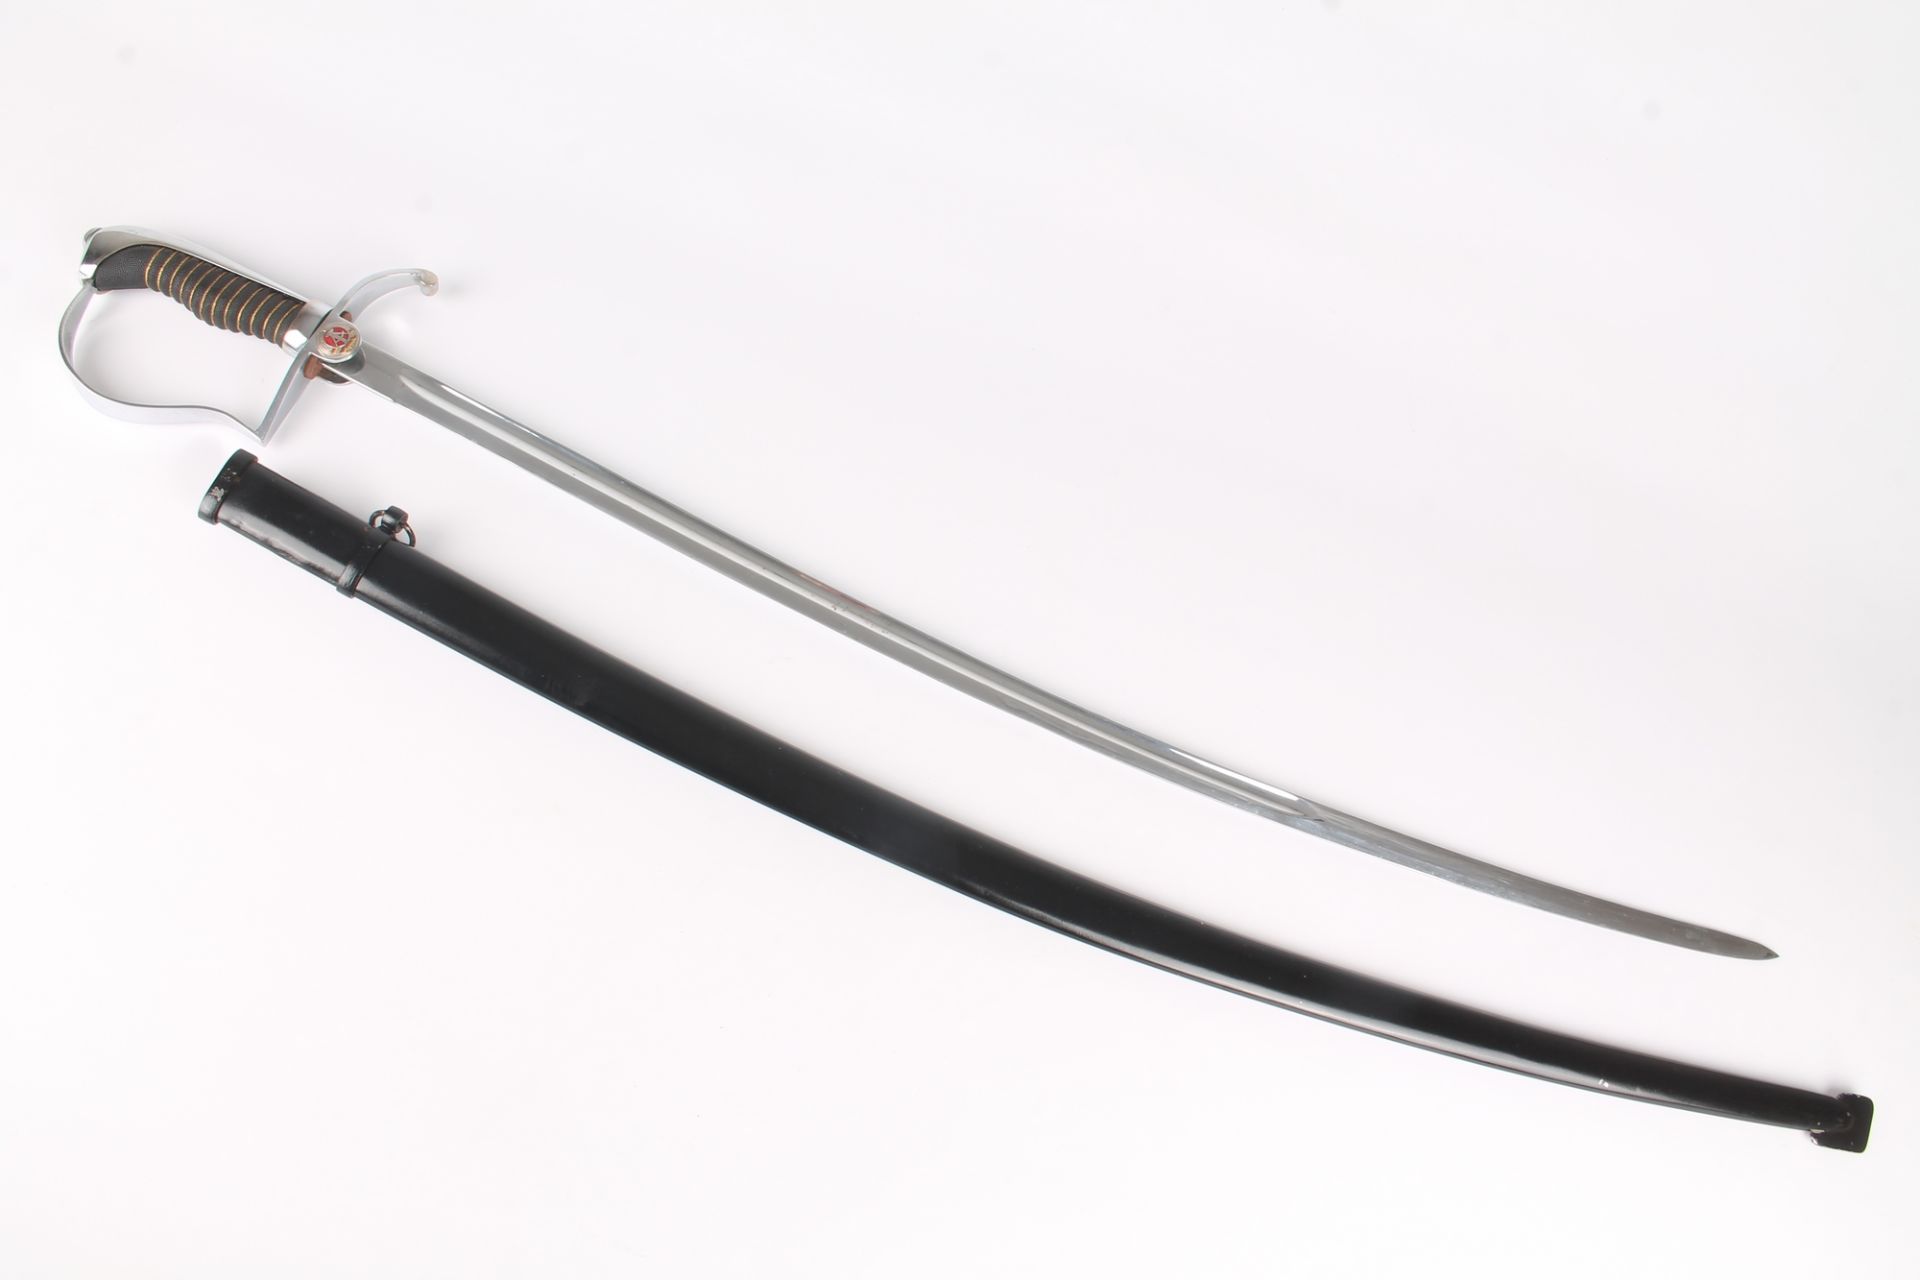 NVA Offizier's Paradesäbel, GDR saber sword, - Image 3 of 8